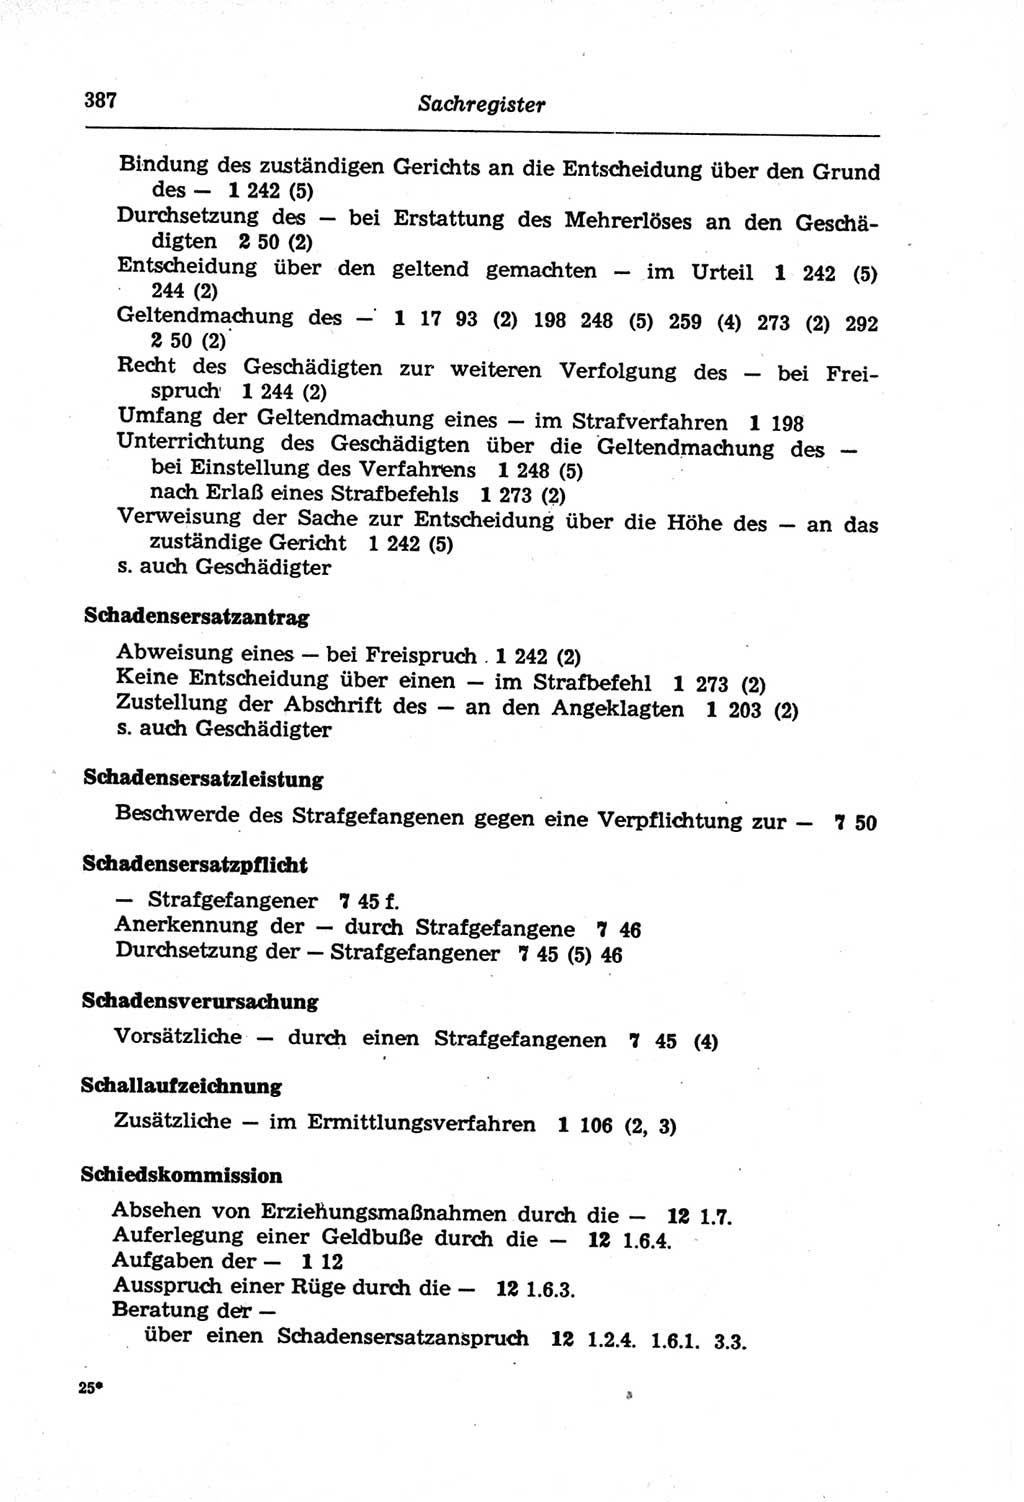 Strafprozeßordnung (StPO) der Deutschen Demokratischen Republik (DDR) und angrenzende Gesetze und Bestimmungen 1968, Seite 387 (StPO Ges. Bstgn. DDR 1968, S. 387)